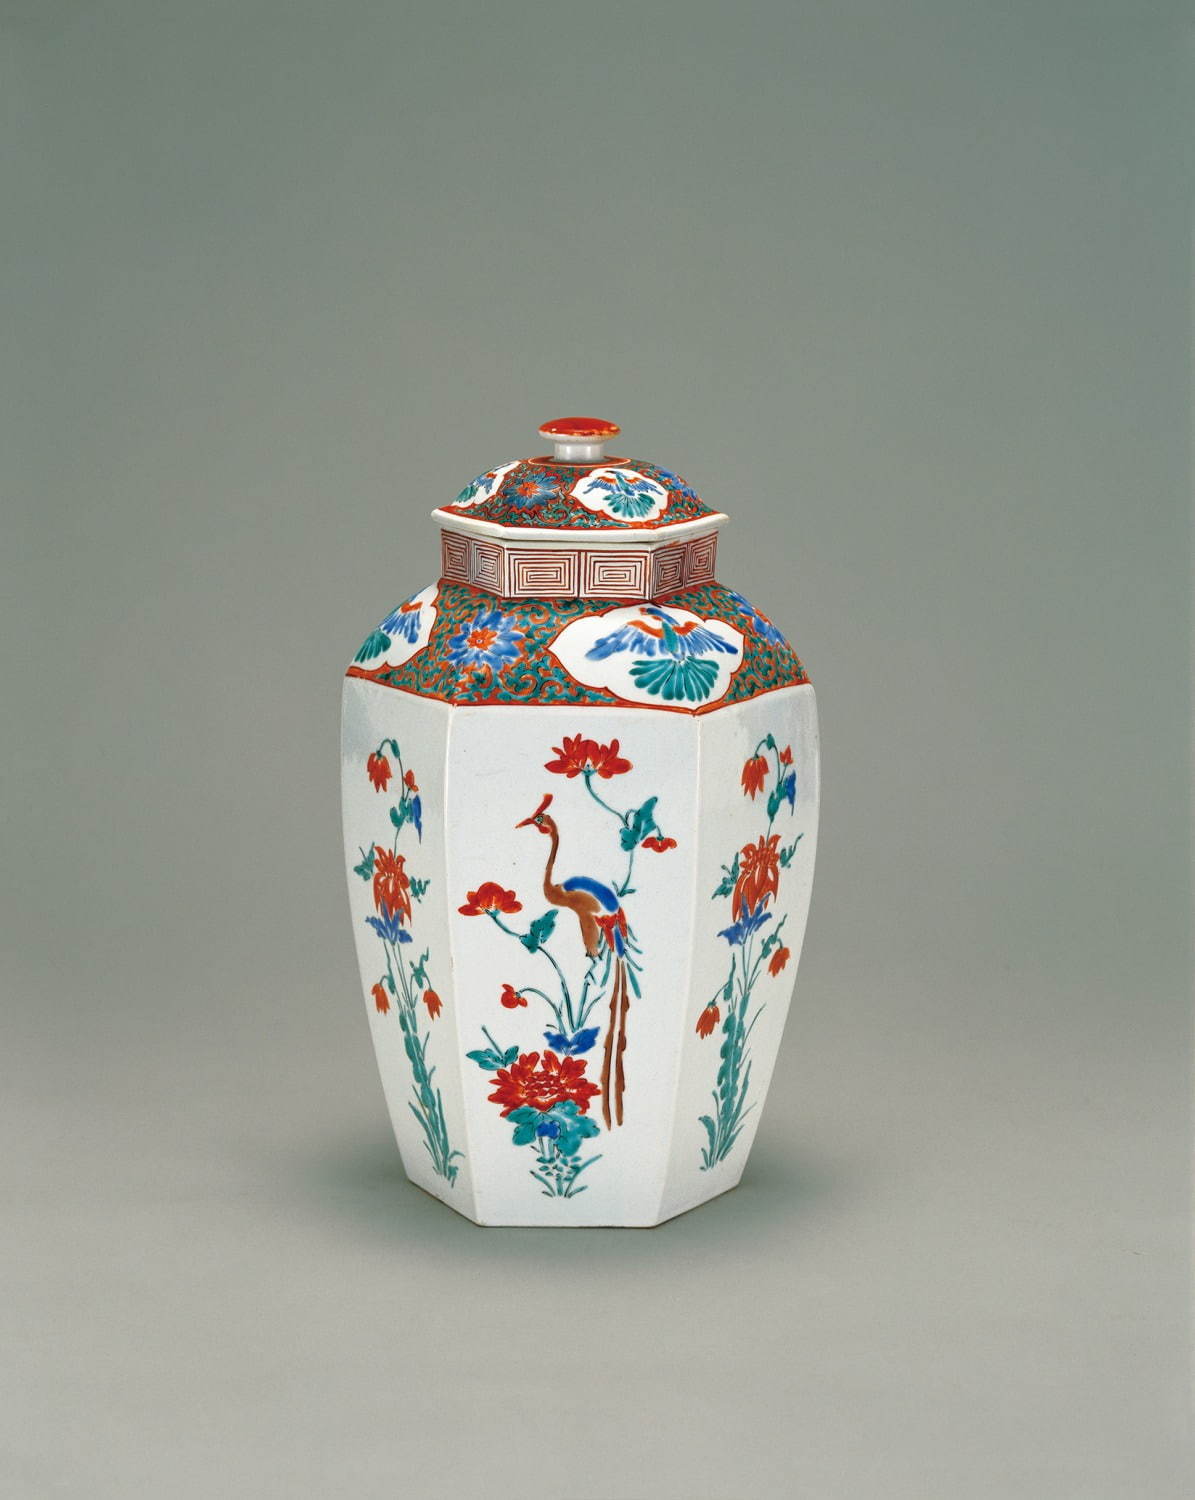 色絵花鳥文六角壺 一合 
江戸時代 17世紀 サントリー美術館